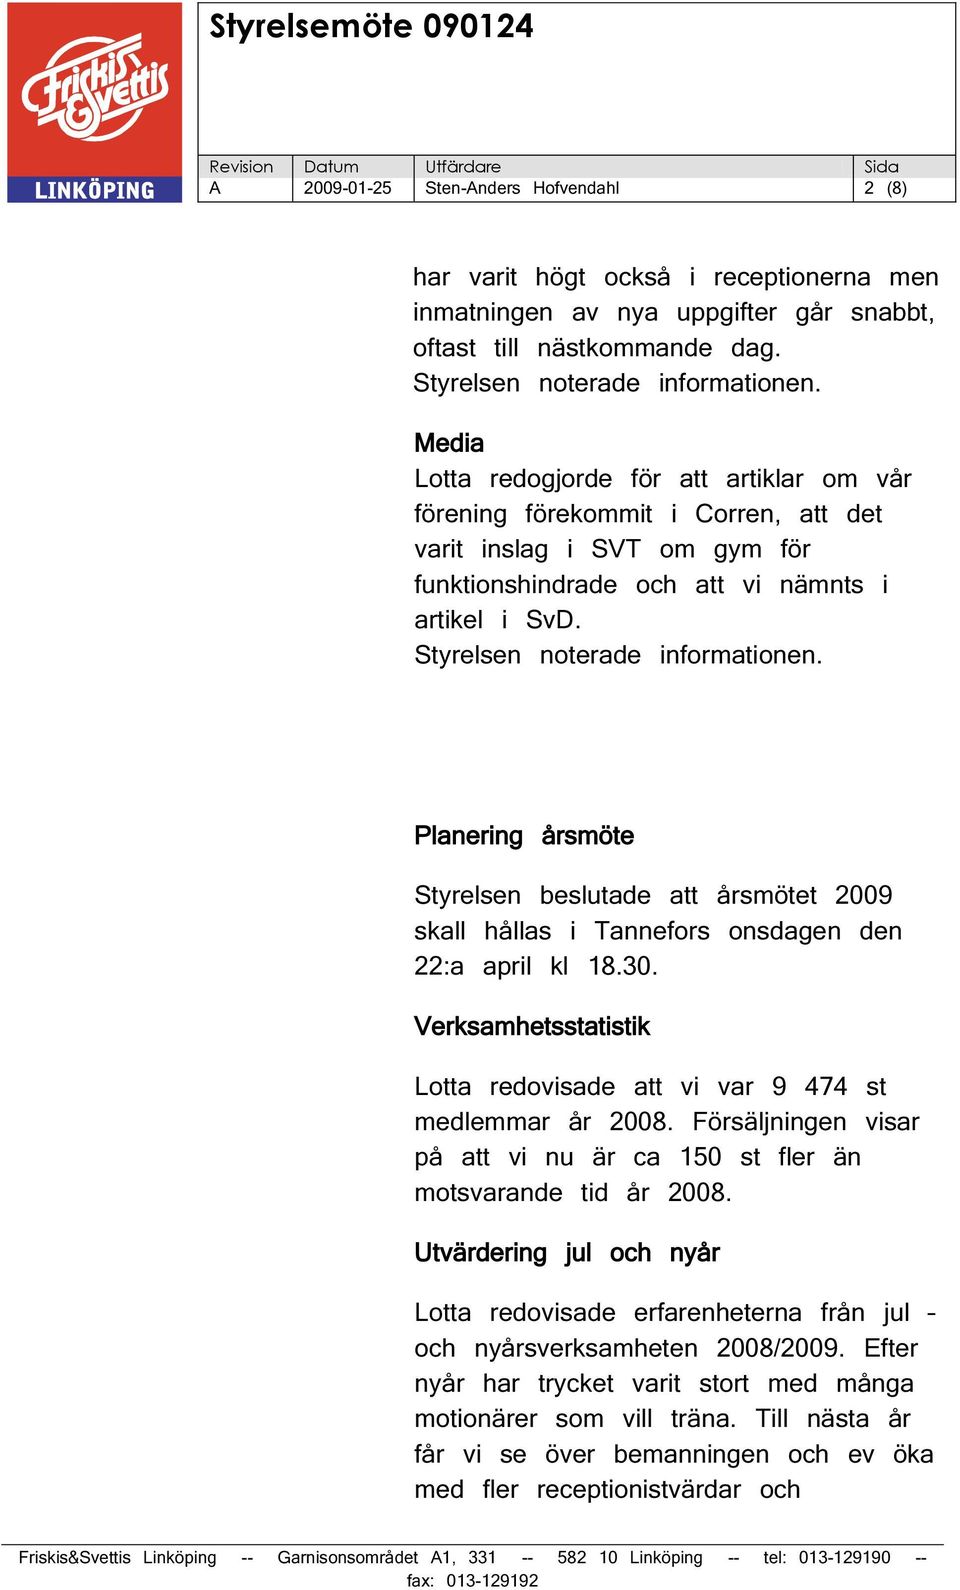 Planering årsmöte Styrelsen beslutade att årsmötet 2009 skall hållas i Tannefors onsdagen den 22:a april kl 18.30. Verksamhetsstatistik Lotta redovisade att vi var 9 474 st medlemmar år 2008.